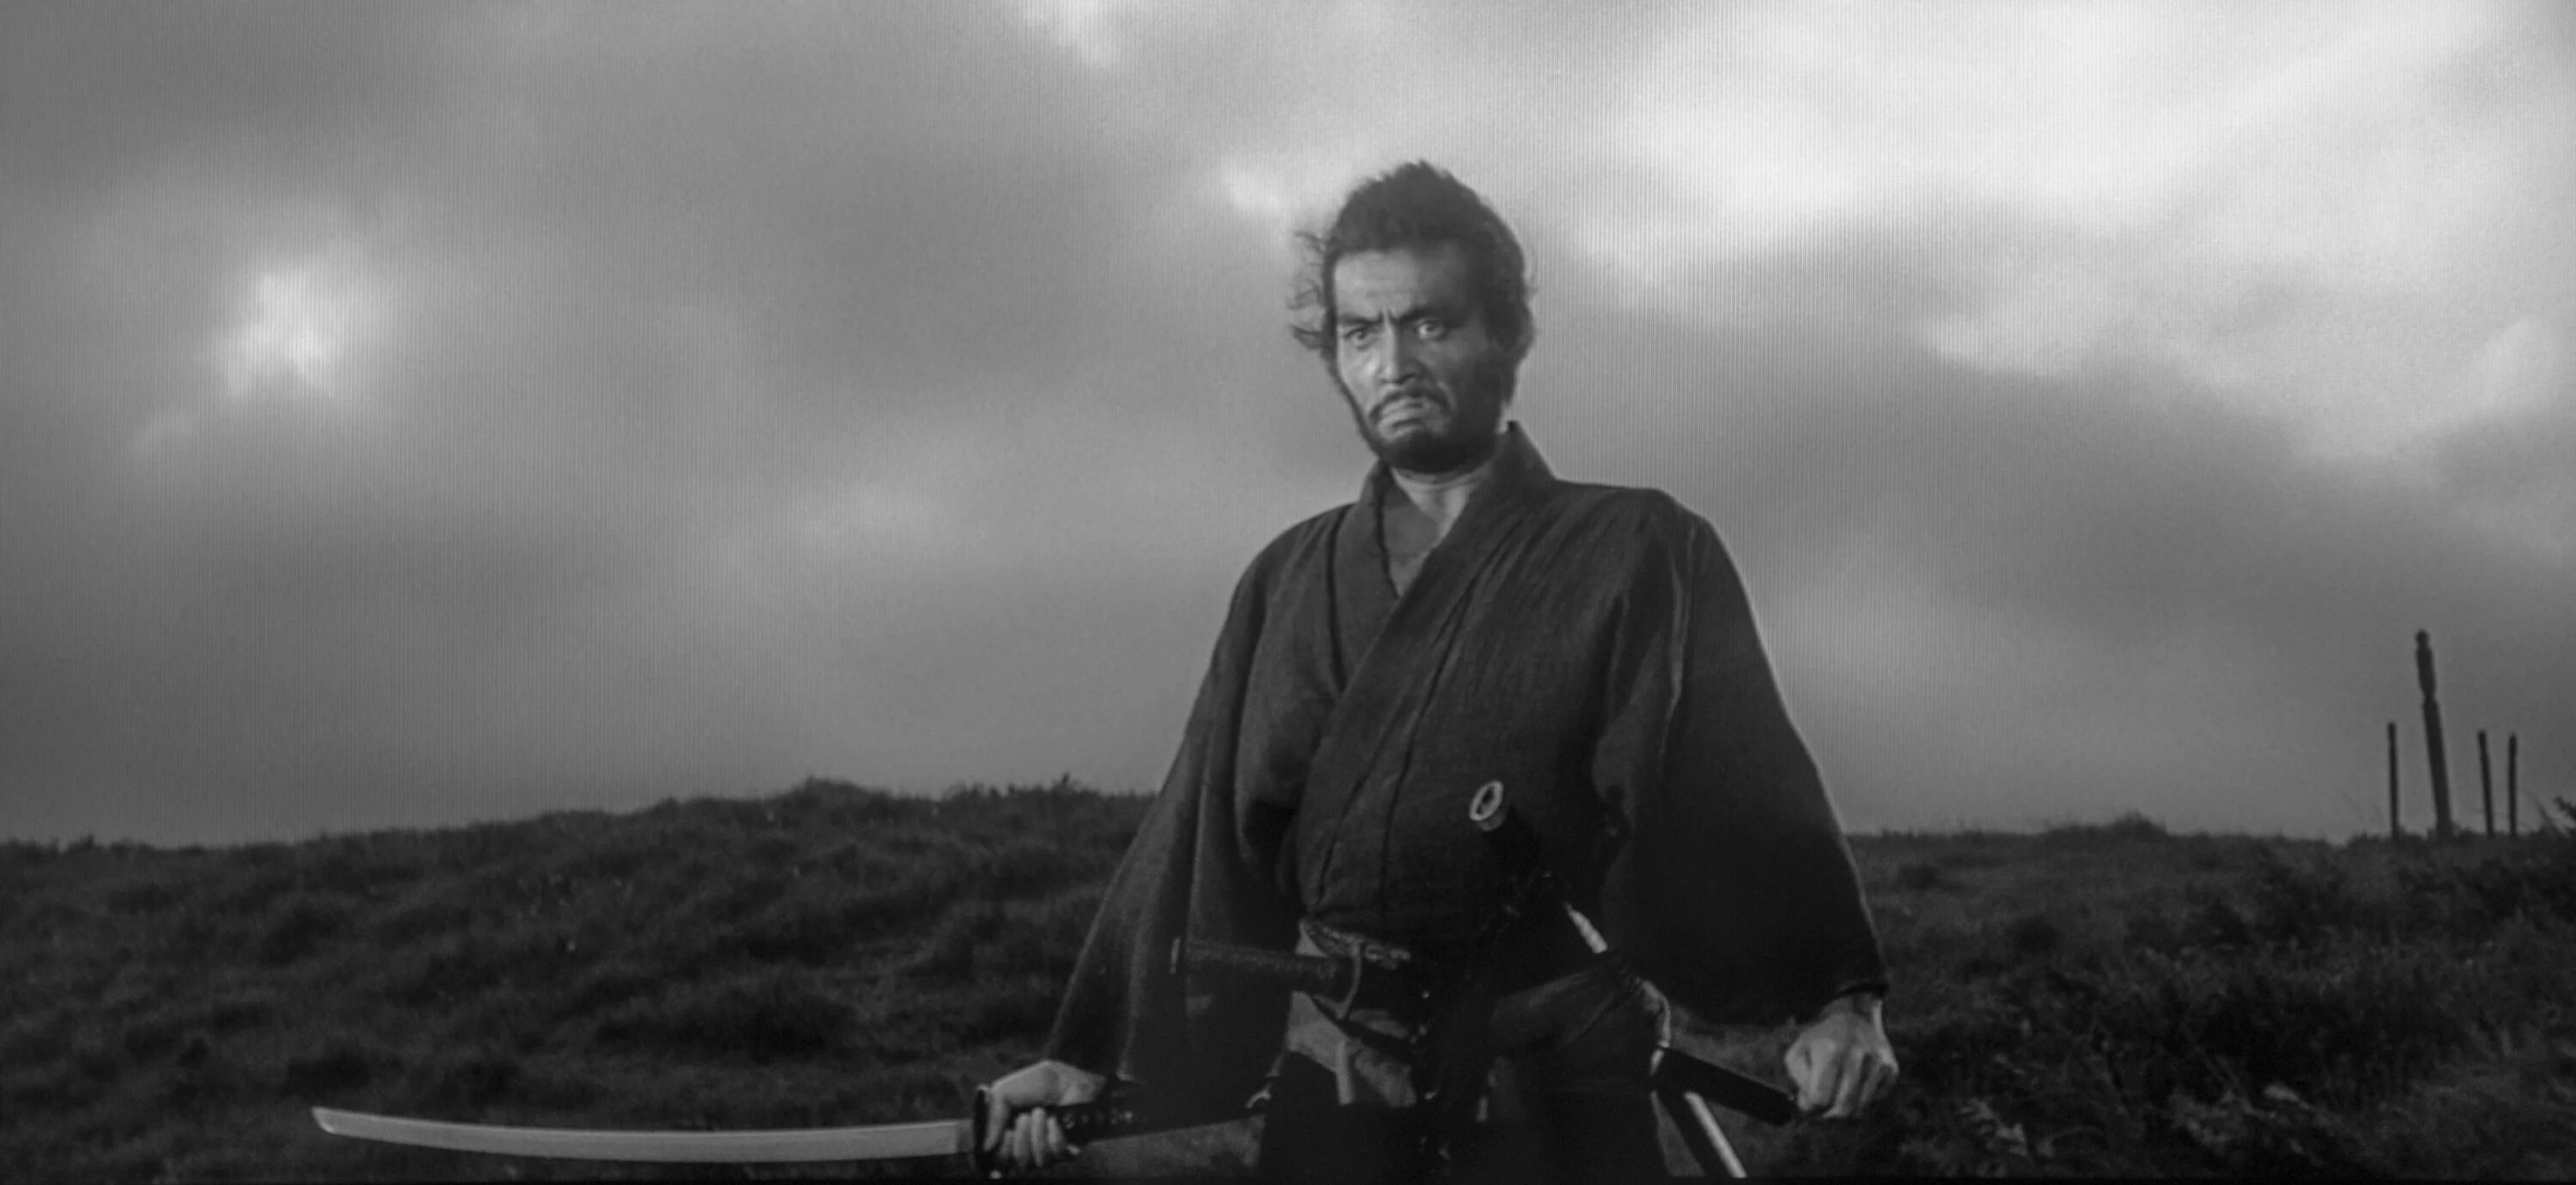 Тацуя Накадаи семь самураев. Тосиро Мифунэ семь самураев. Акира Куросава харакири.